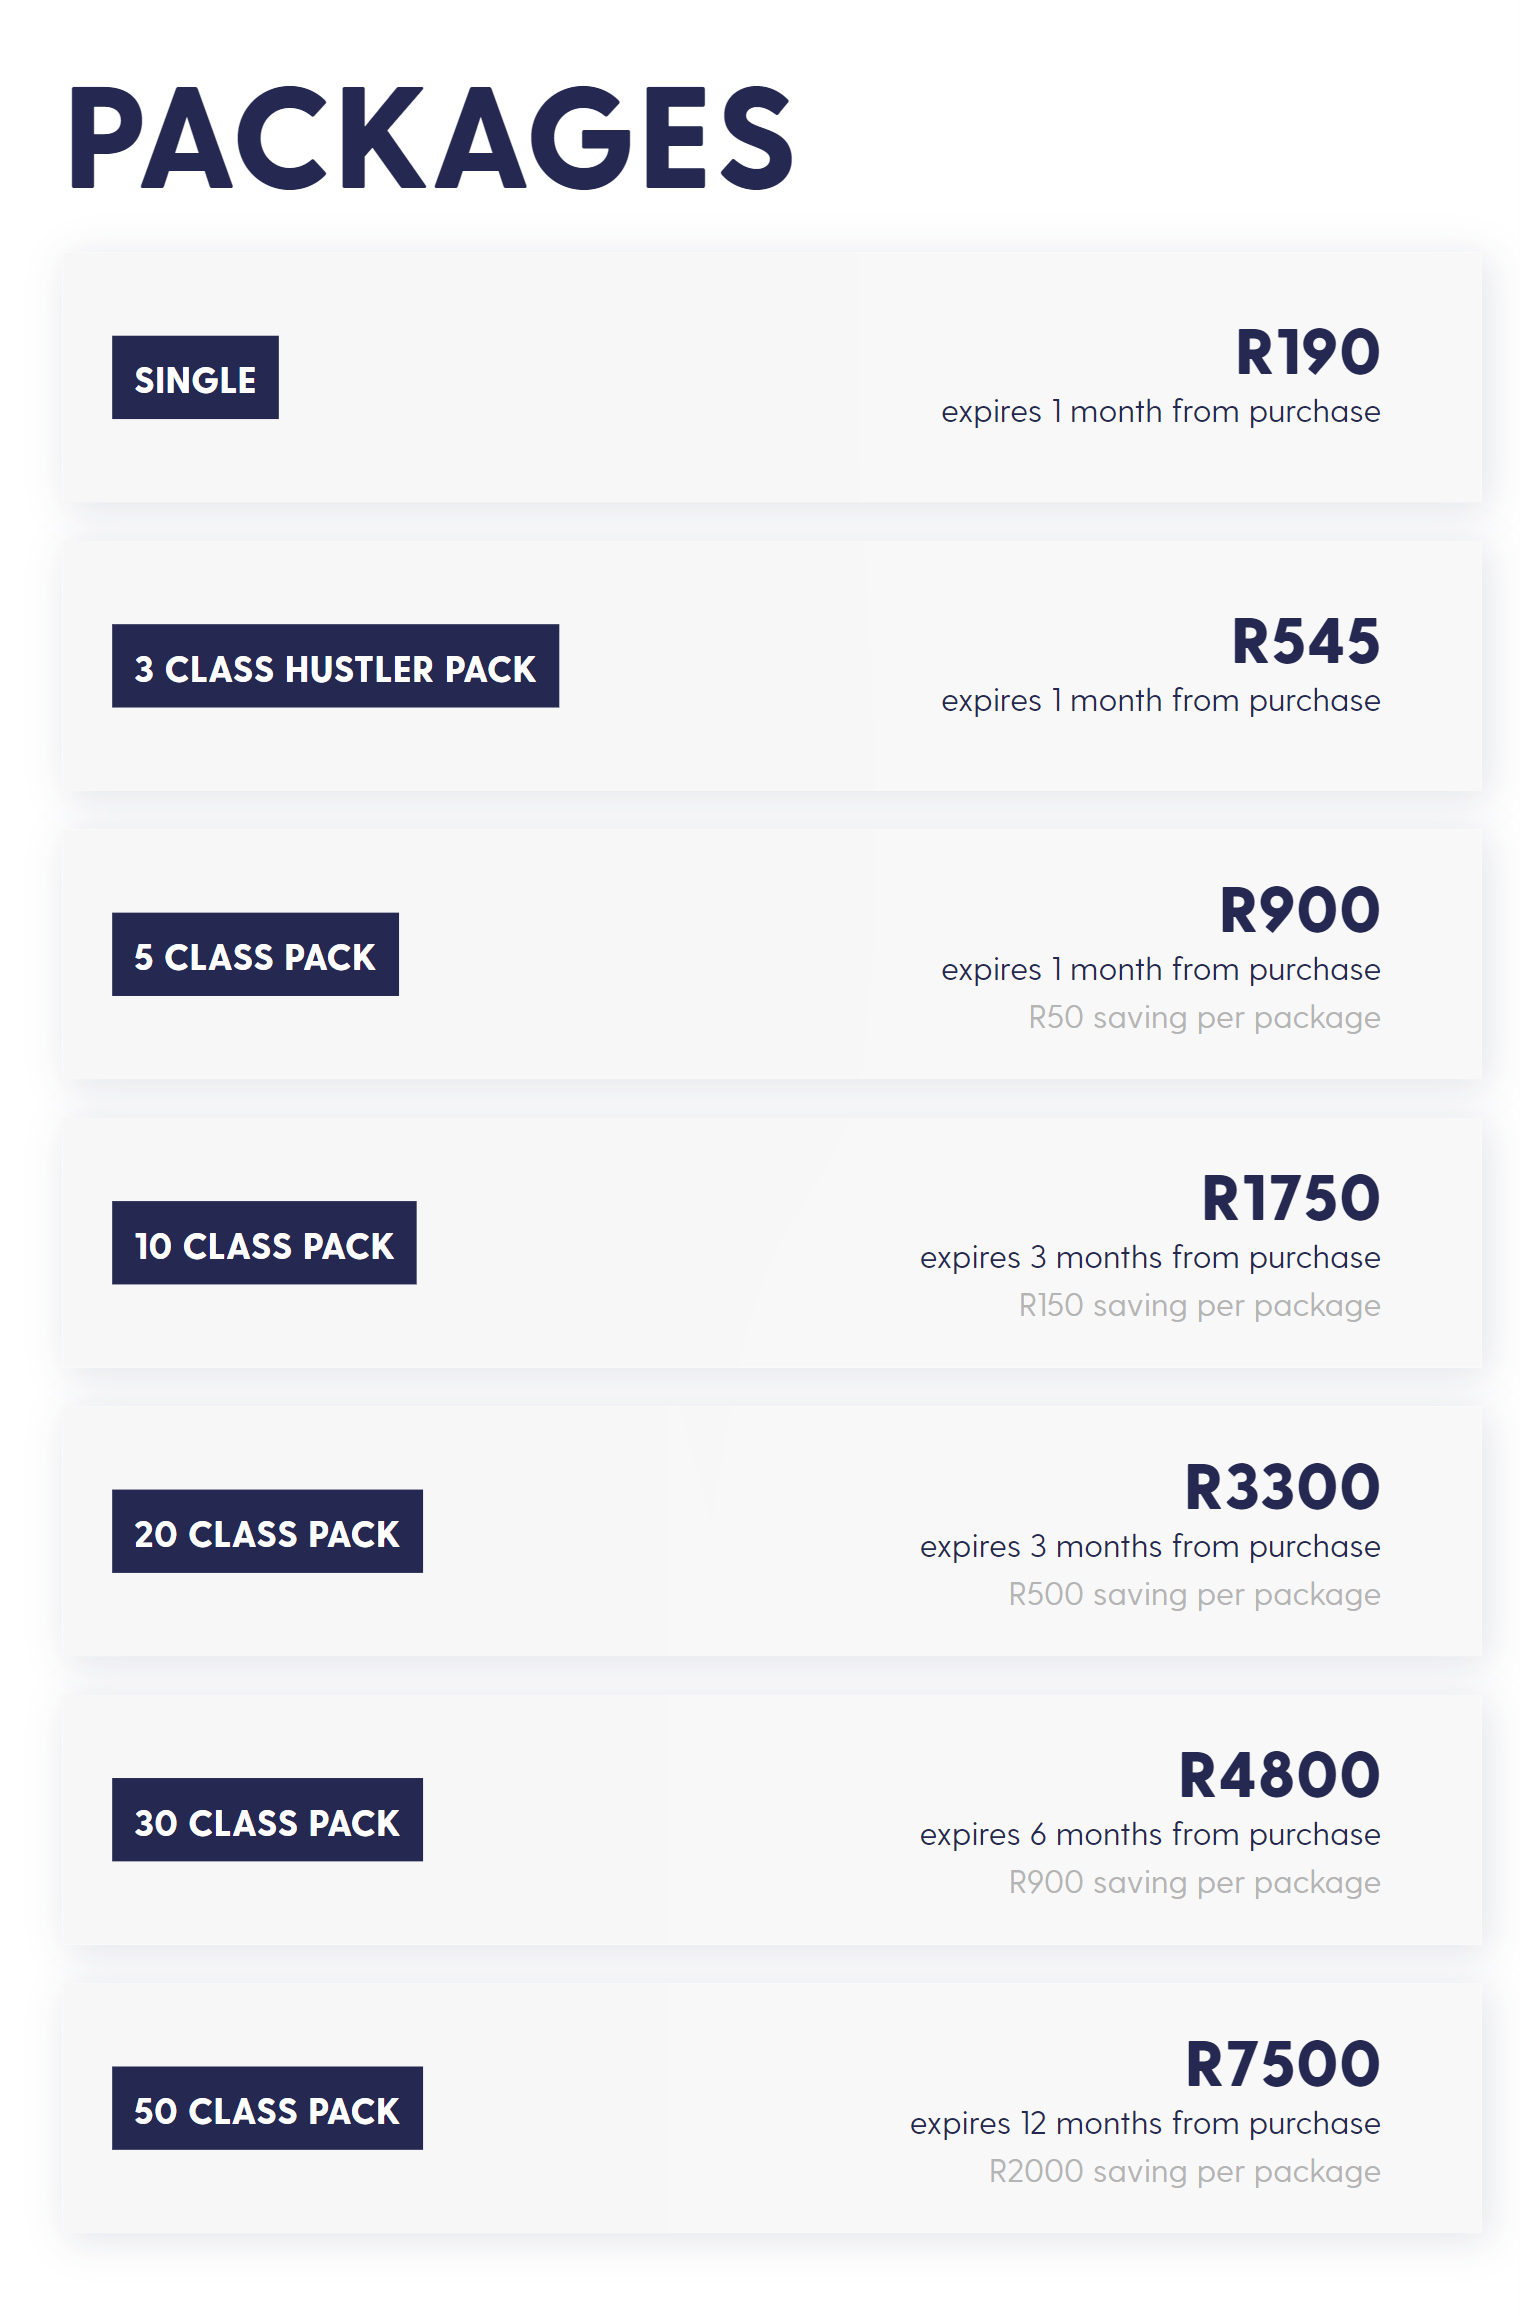 Цены на сайклинг в кейптаунской студии Hustle & Heart указаны в южноафриканских рэндах. В переводе на рубли получается почти так же, как в московской сети Velobeat. Источник: hustleandheartcyclingstudio.co.za